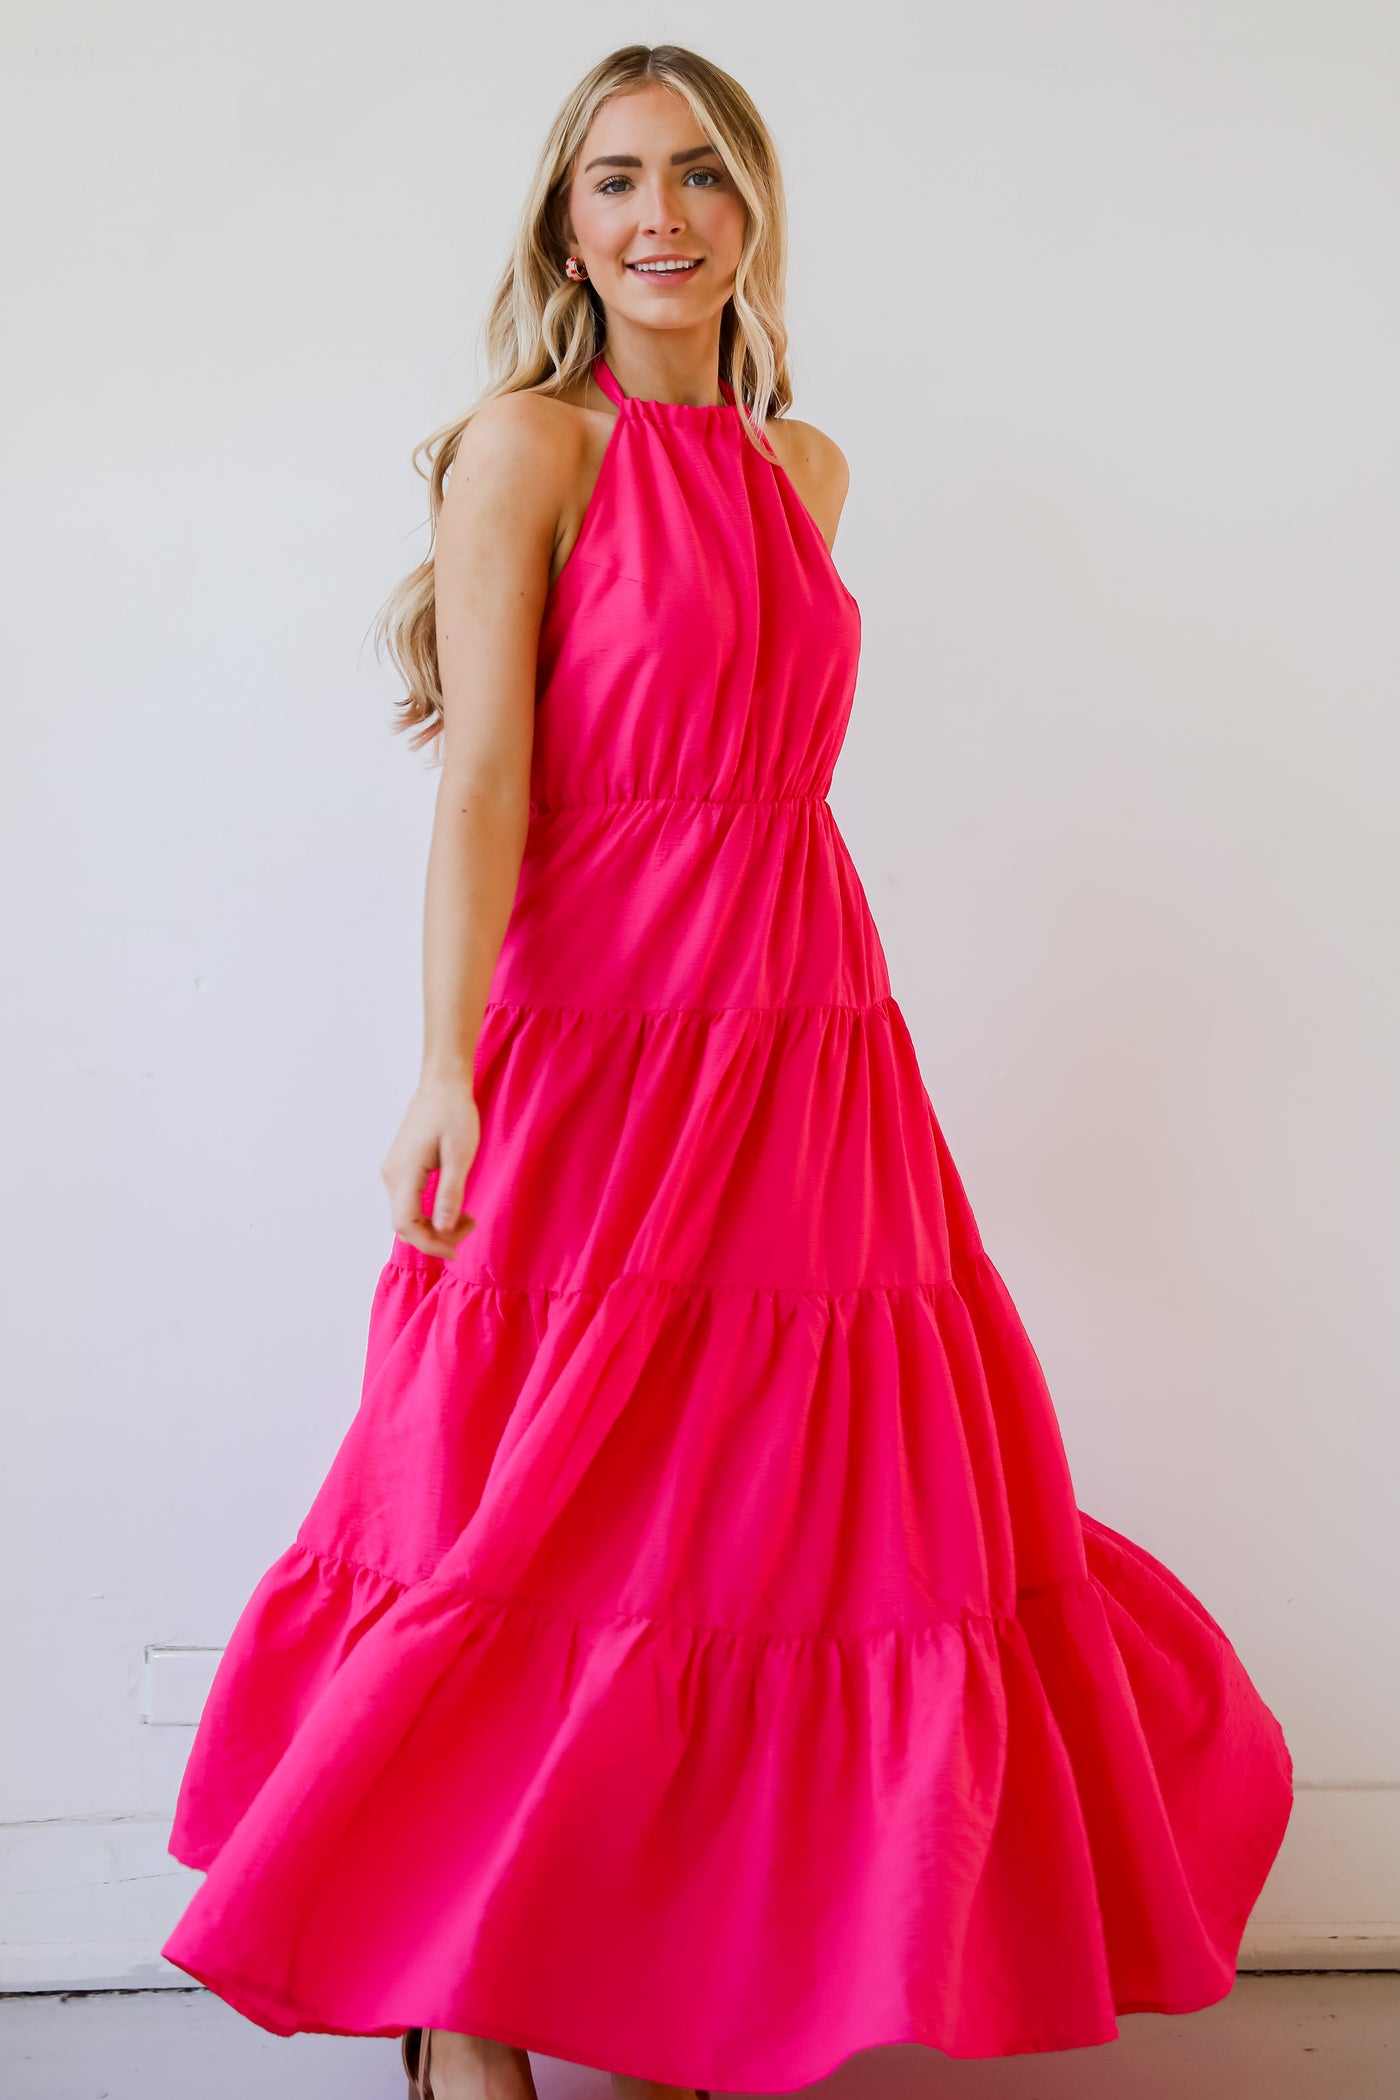 hot pink dress